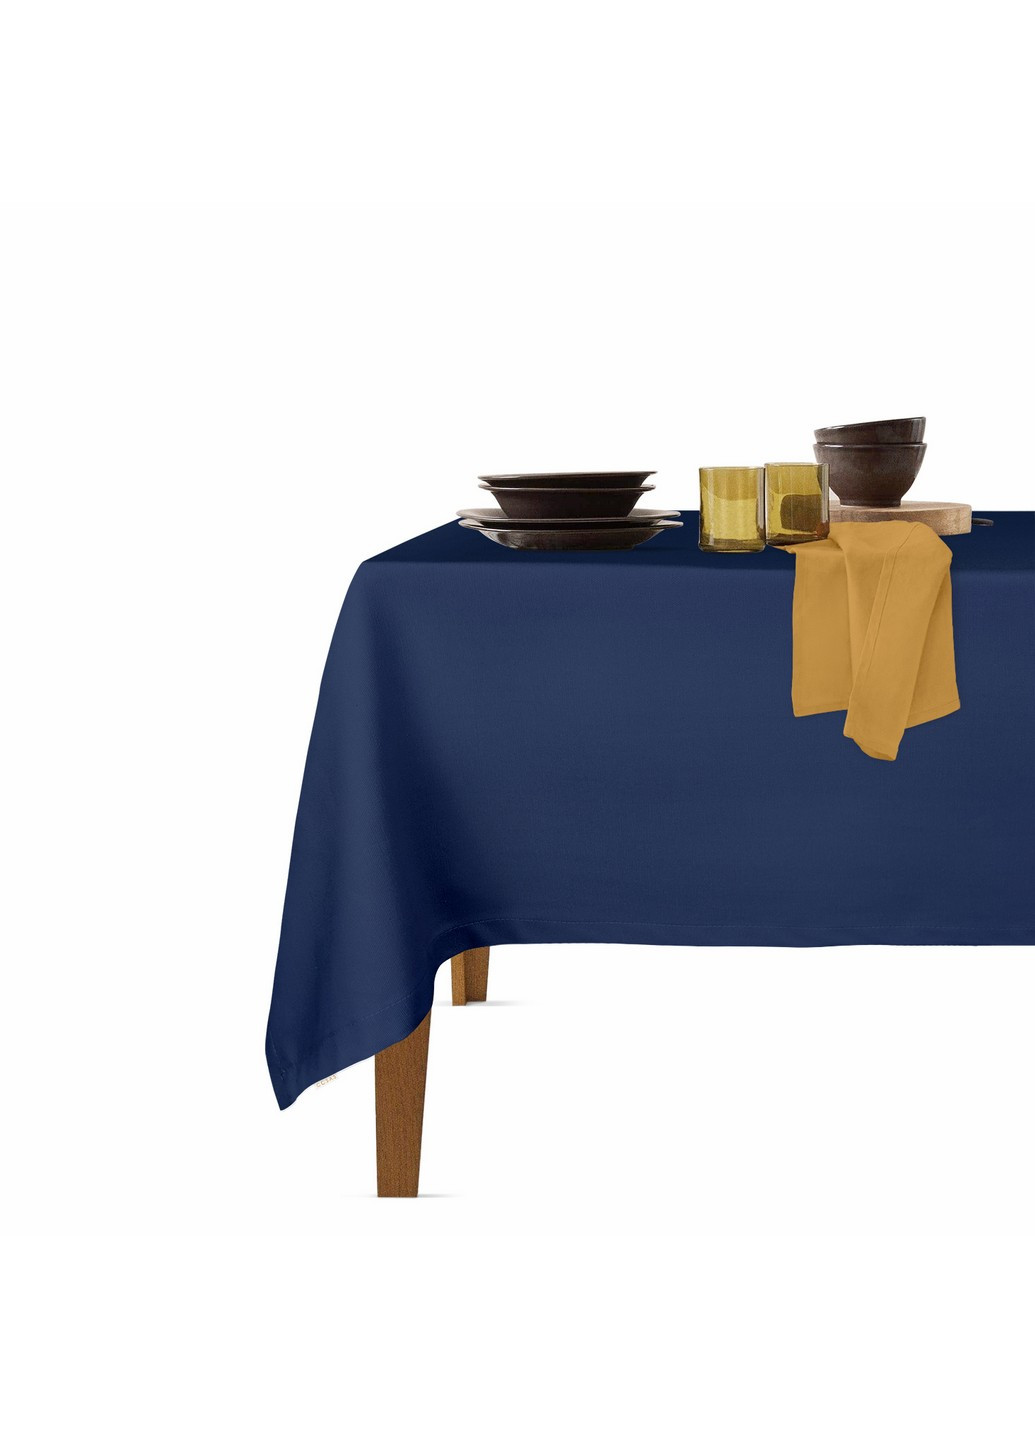 Столовый набор для сервировки стола скатерть DarkBlue 140х180 и салфетки тканевые Mustard 35х35 - 4 шт (4822052073810) Cosas (252506542)